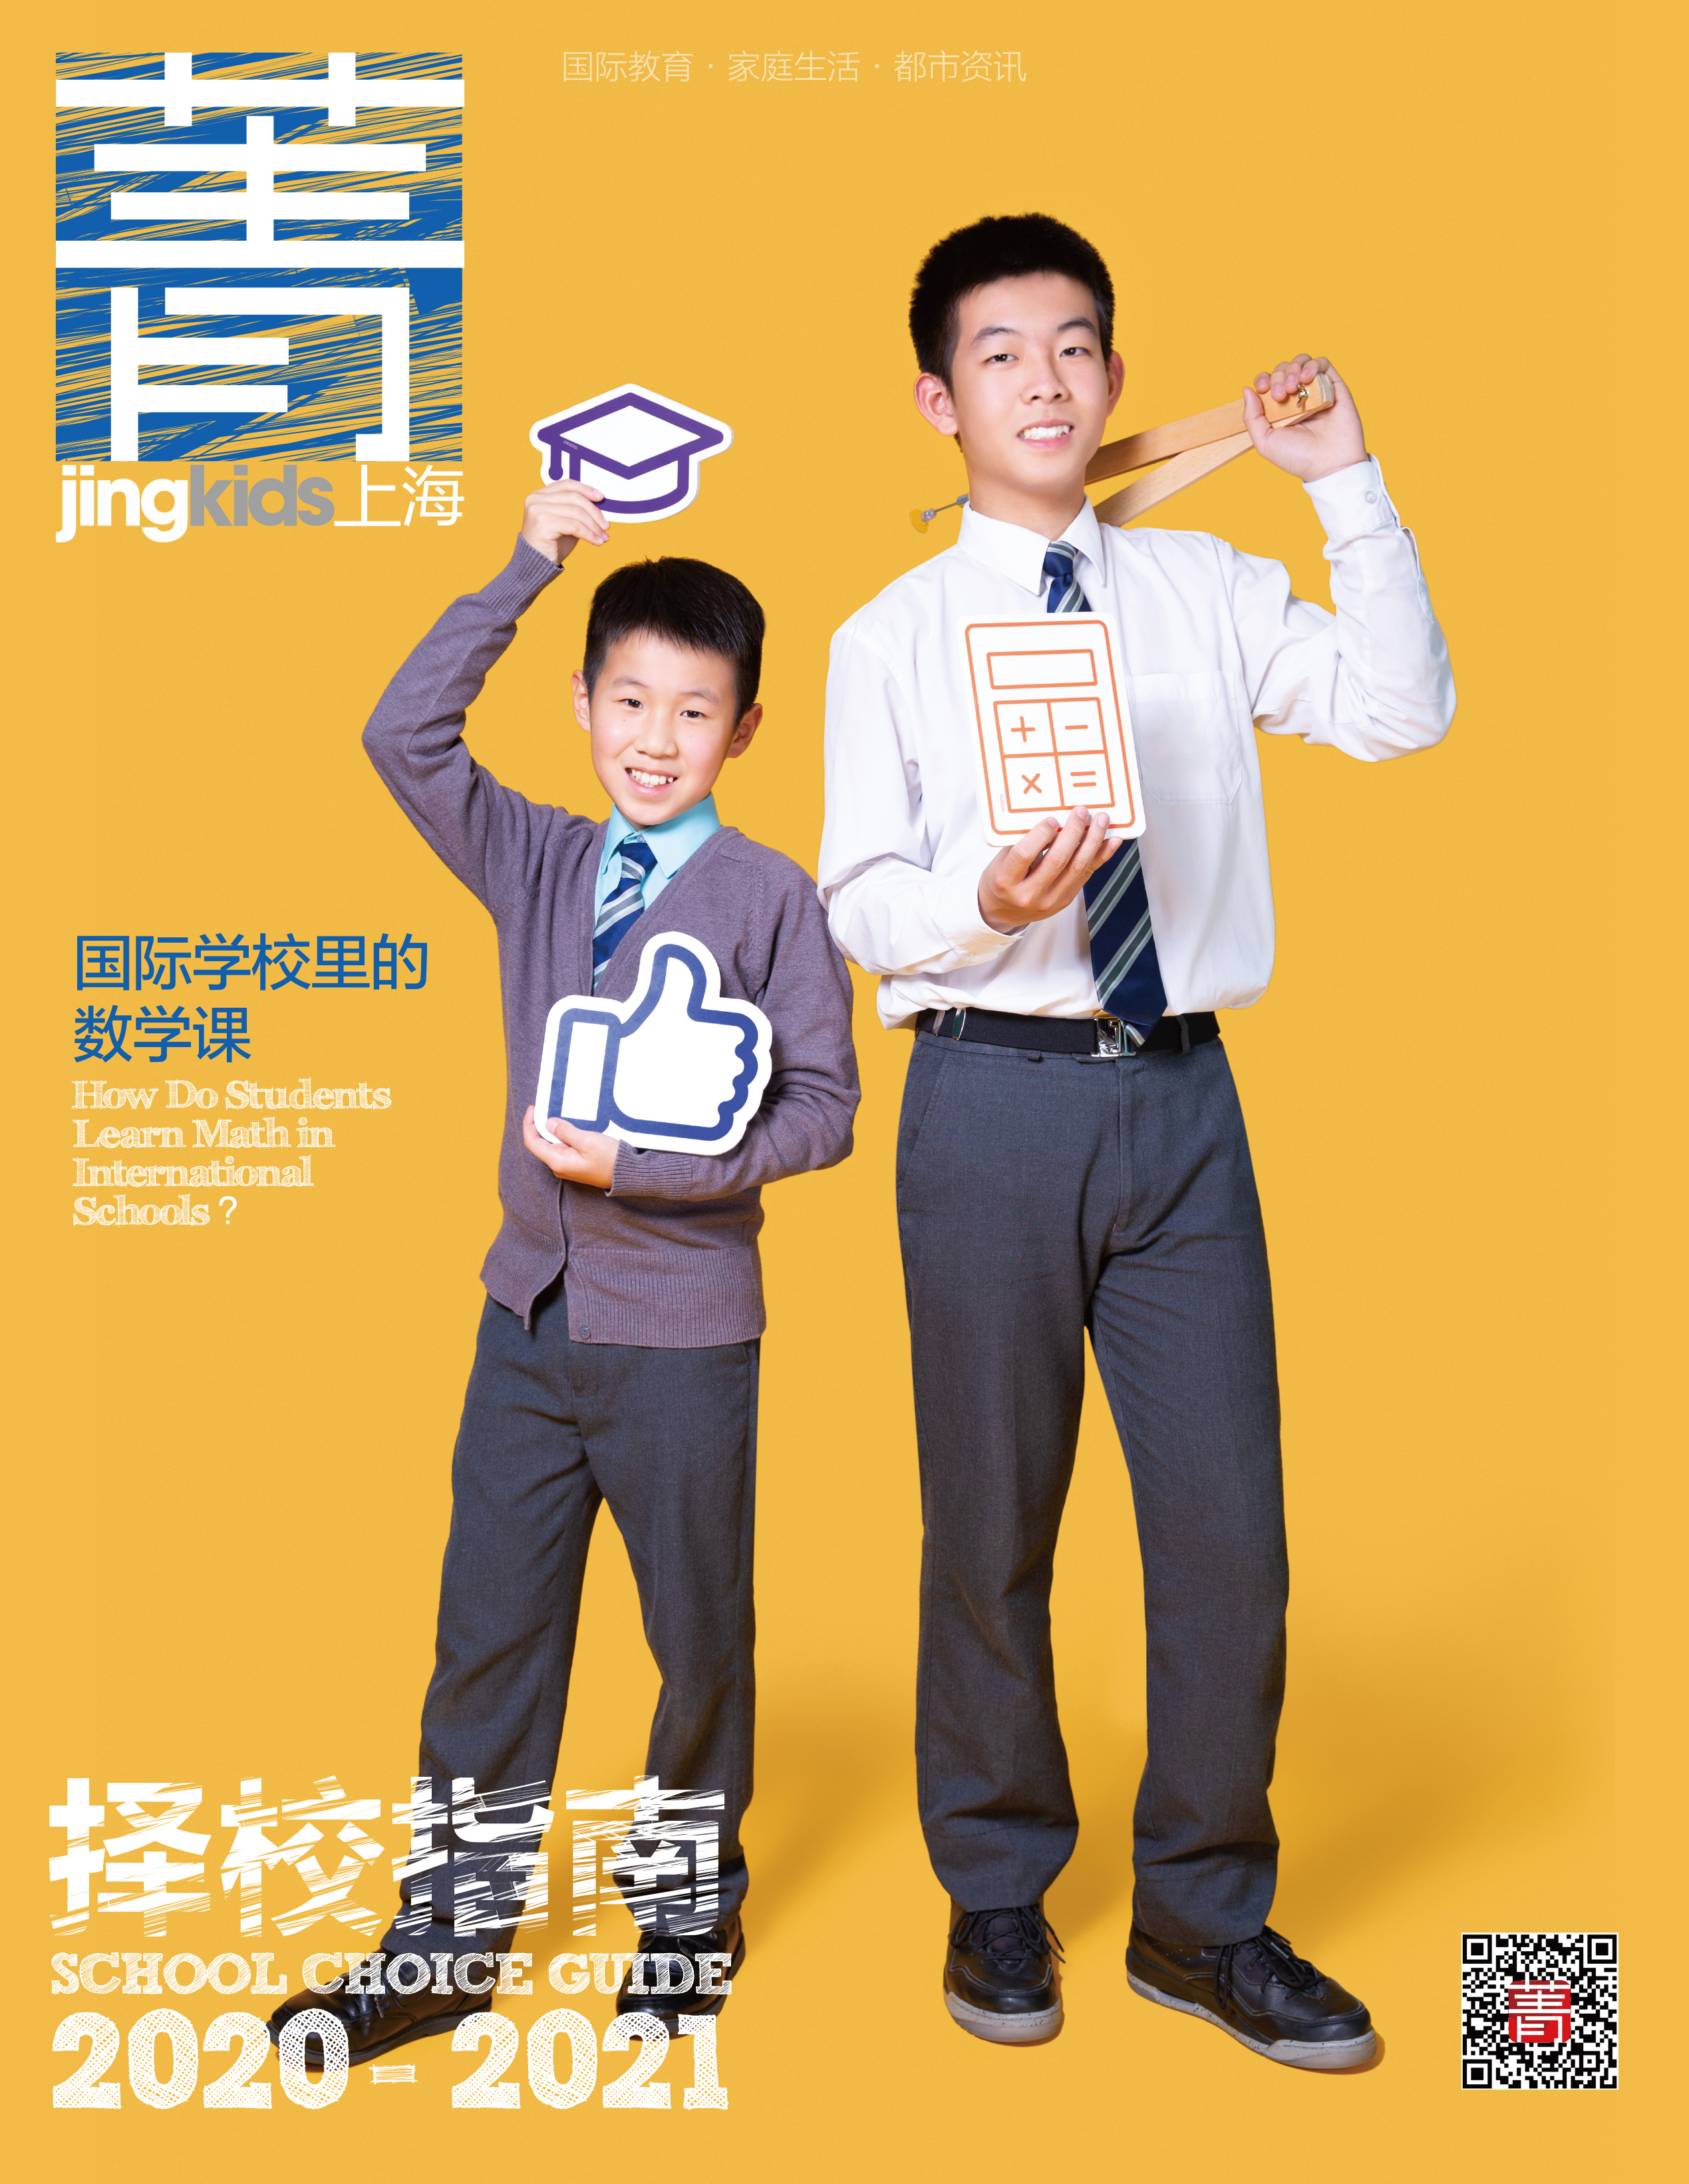 2020-2021择校指南》 | 2020年2-3月刊《菁kids》上海电子版| 国际教育|家庭生活|社区活动